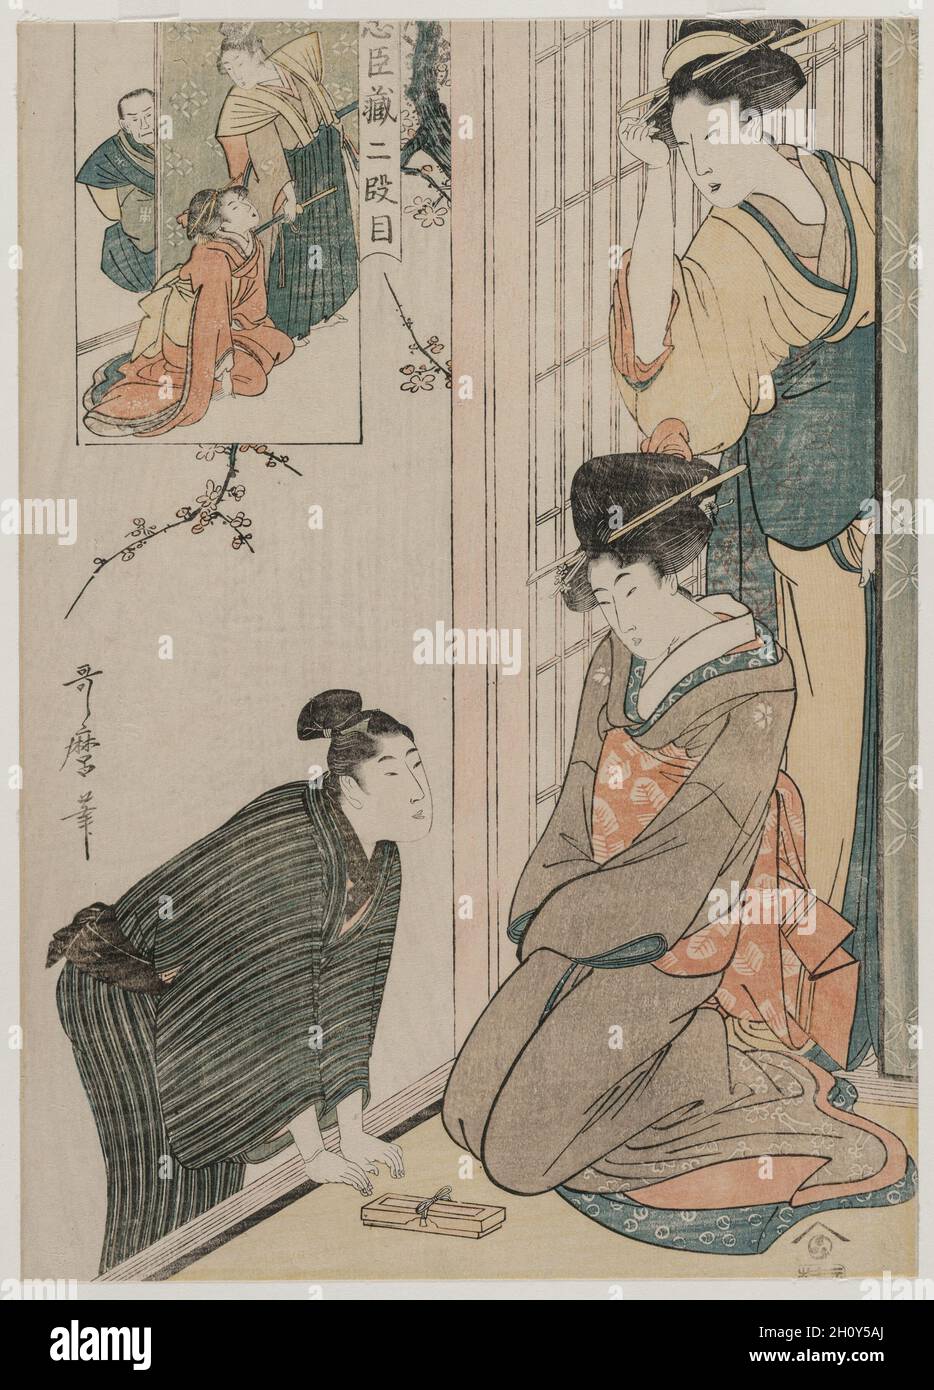 Chushingura: Acto II del almacén de lealtad, a fines del decenio de 1790. Kitagawa Utamaro (japonés, 1753?-1806). Grabado en madera de color; hoja: 36,2 x 25,8 cm (14 1/4 x 10 3/16 pulg.). Foto de stock